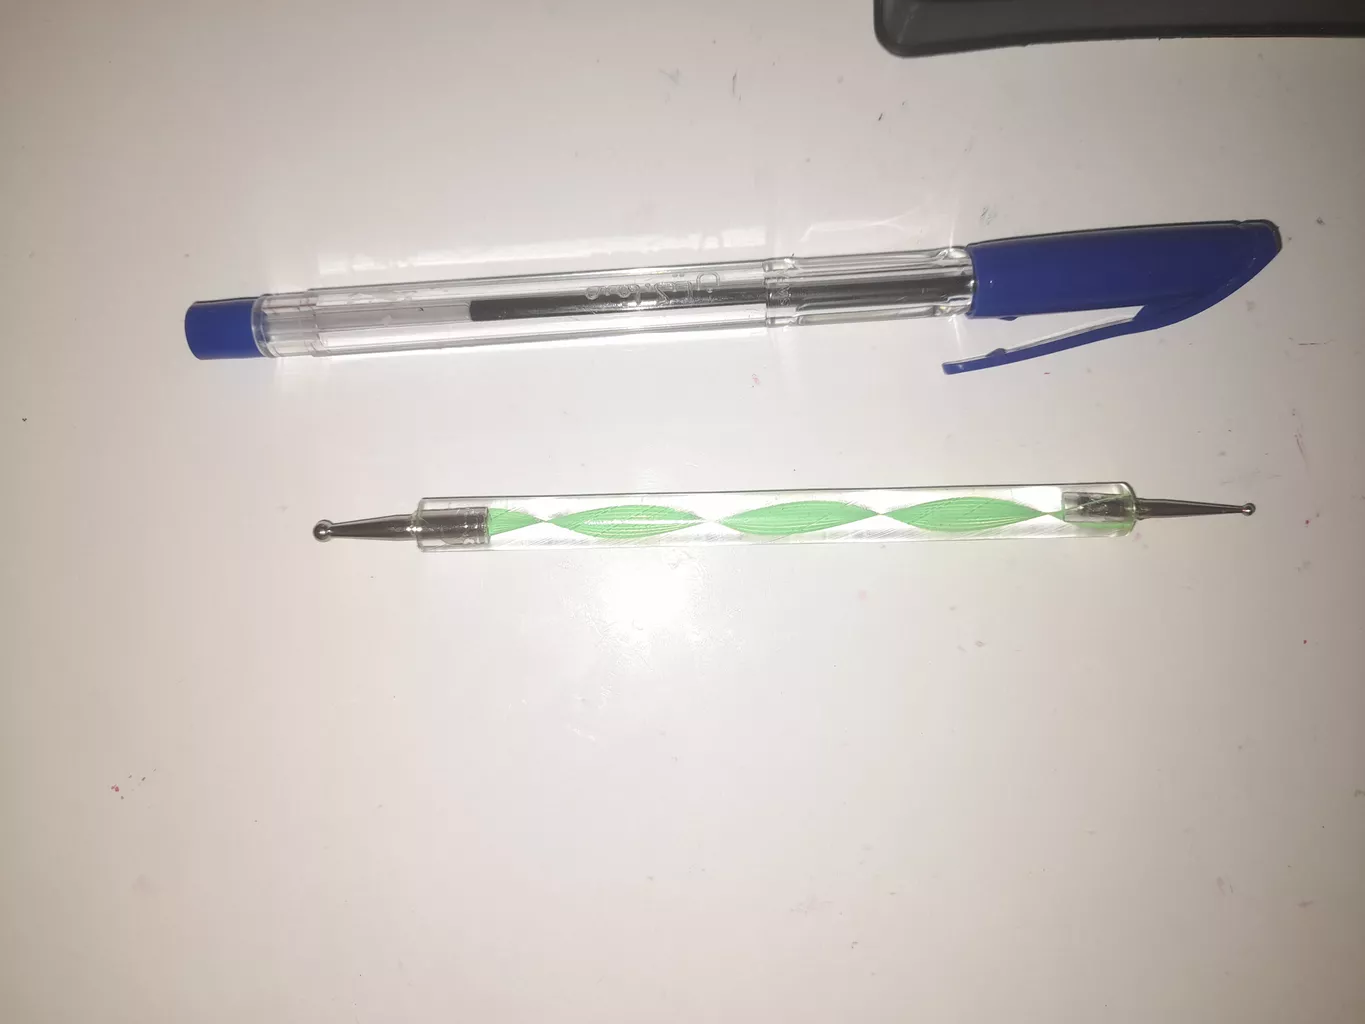 قلم طراحی ناخن مدل داتینگ کد 06